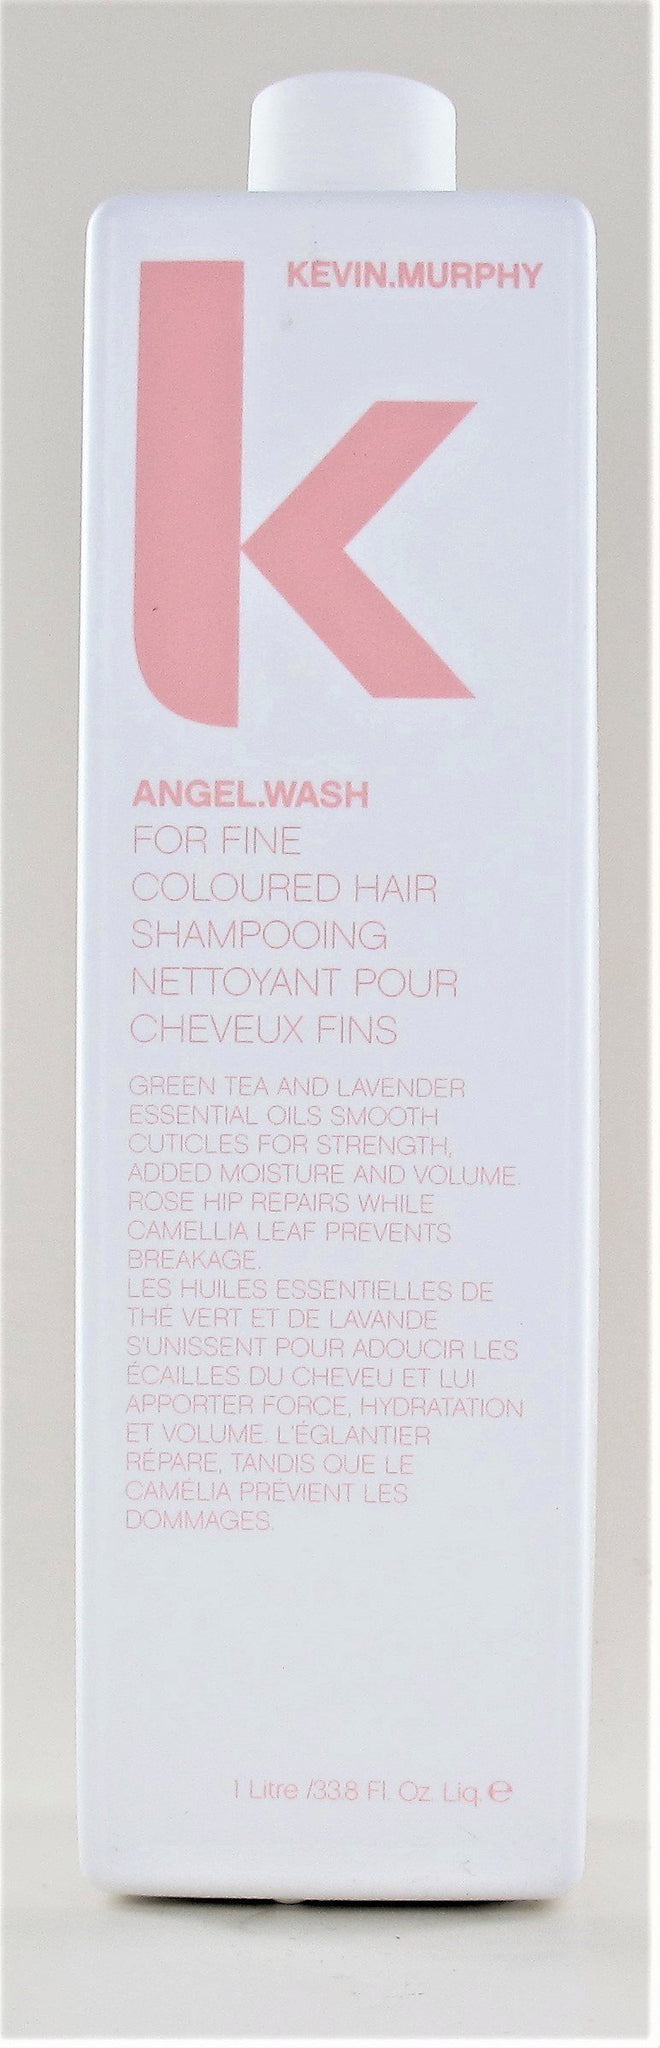 Kevin Murphy Angel Wash Shampoo 33.8 oz